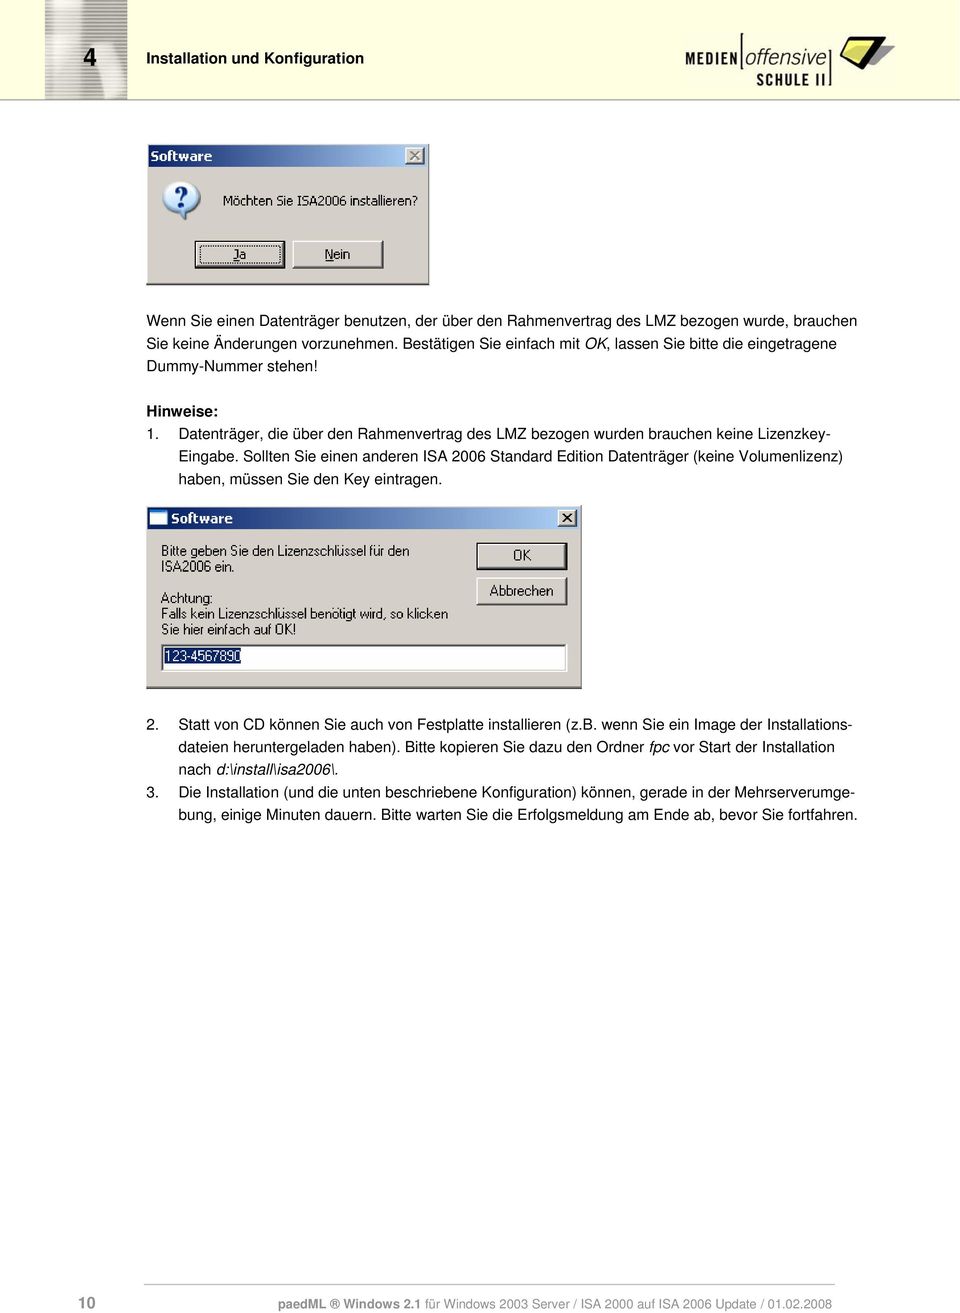 Sollten Sie einen anderen ISA 2006 Standard Edition Datenträger (keine Volumenlizenz) haben, müssen Sie den Key eintragen. 2. Statt von CD können Sie auch von Festplatte installieren (z.b. wenn Sie ein Image der Installationsdateien heruntergeladen haben).